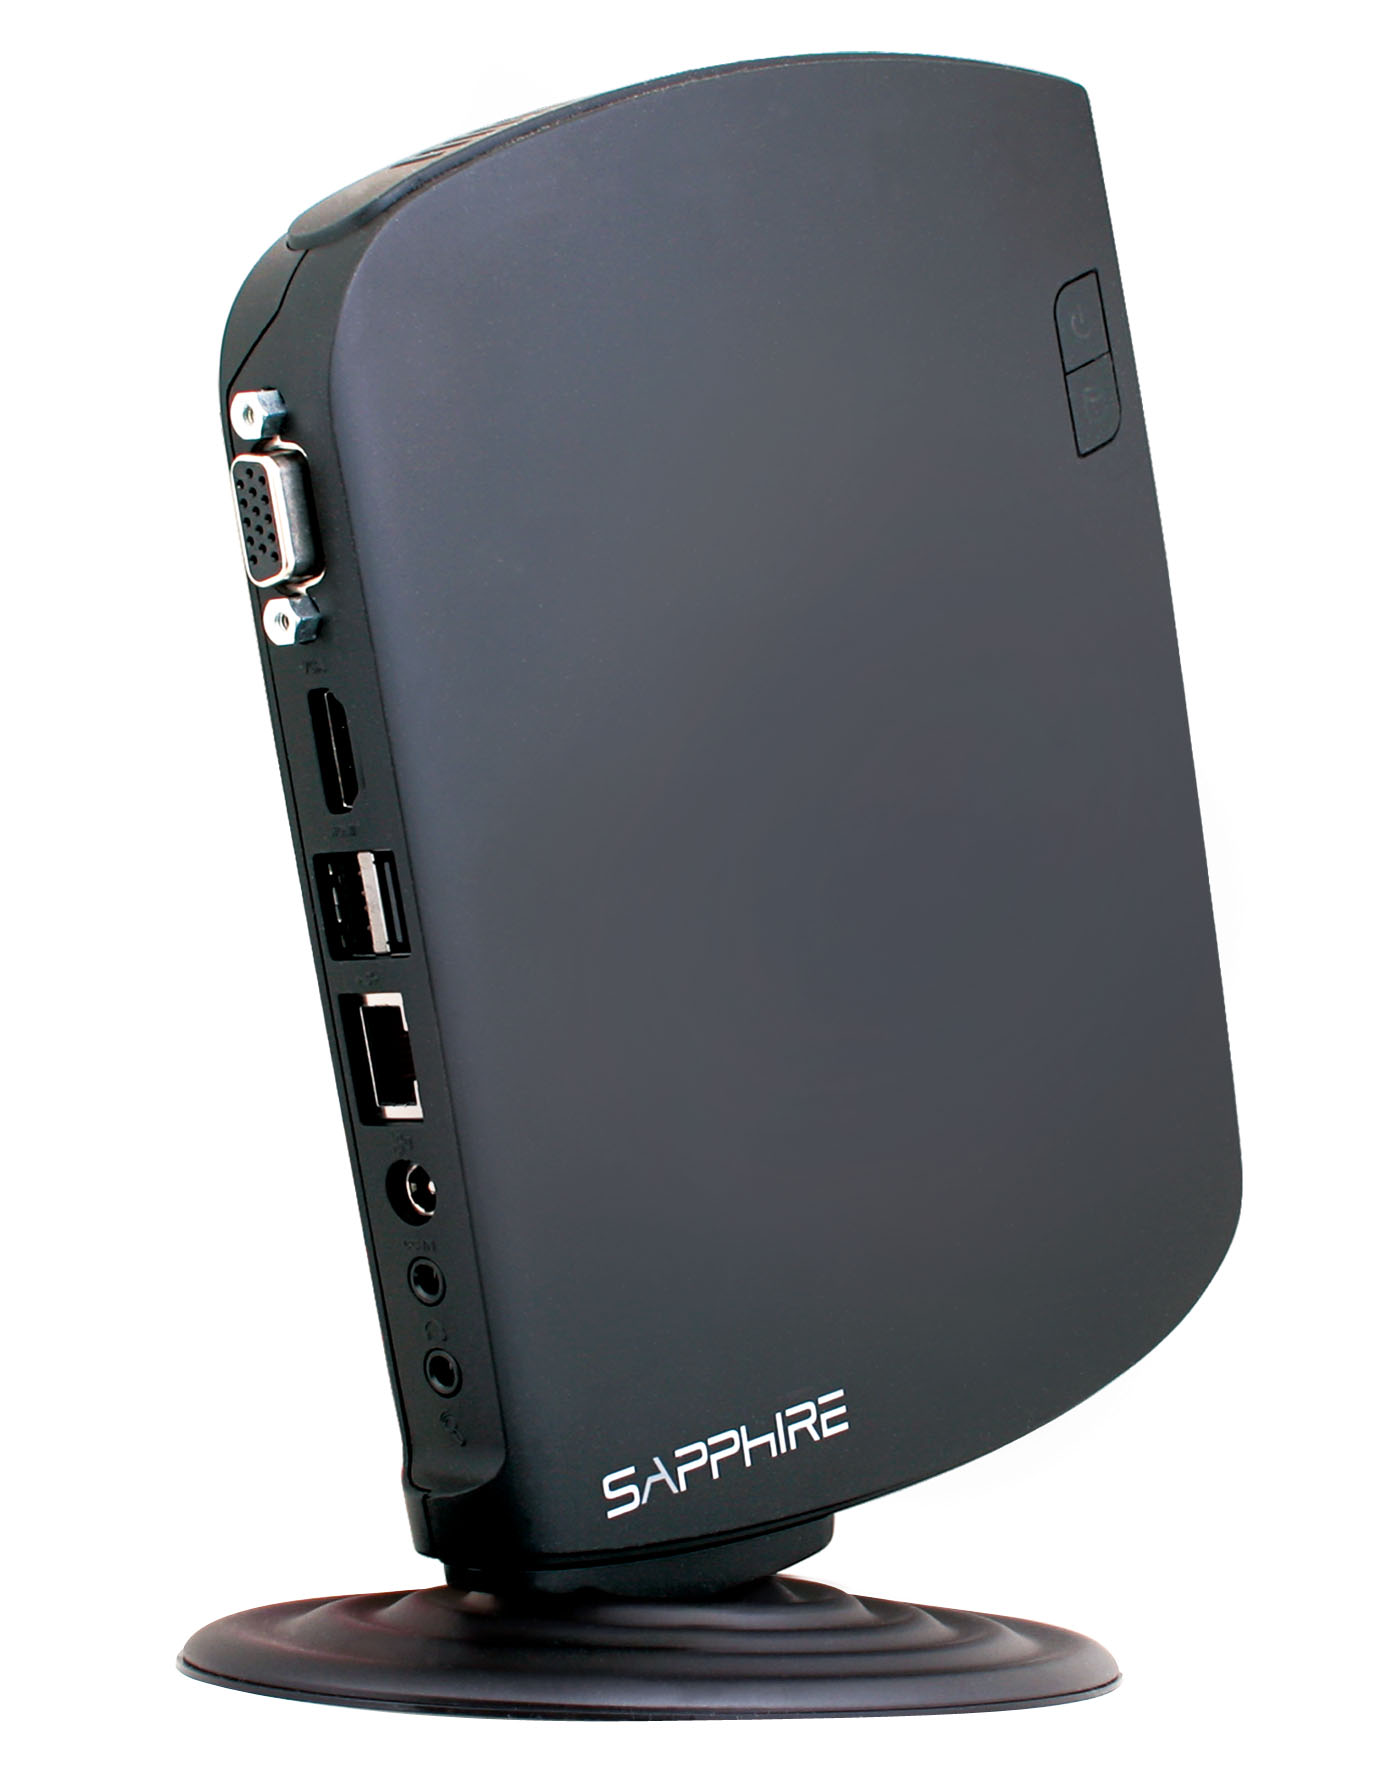 Immagine pubblicata in relazione al seguente contenuto: SAPPHIRE annuncia il Mini PC EDGE-HD2 con cpu a 1.8GHz | Nome immagine: news15324_5.jpg